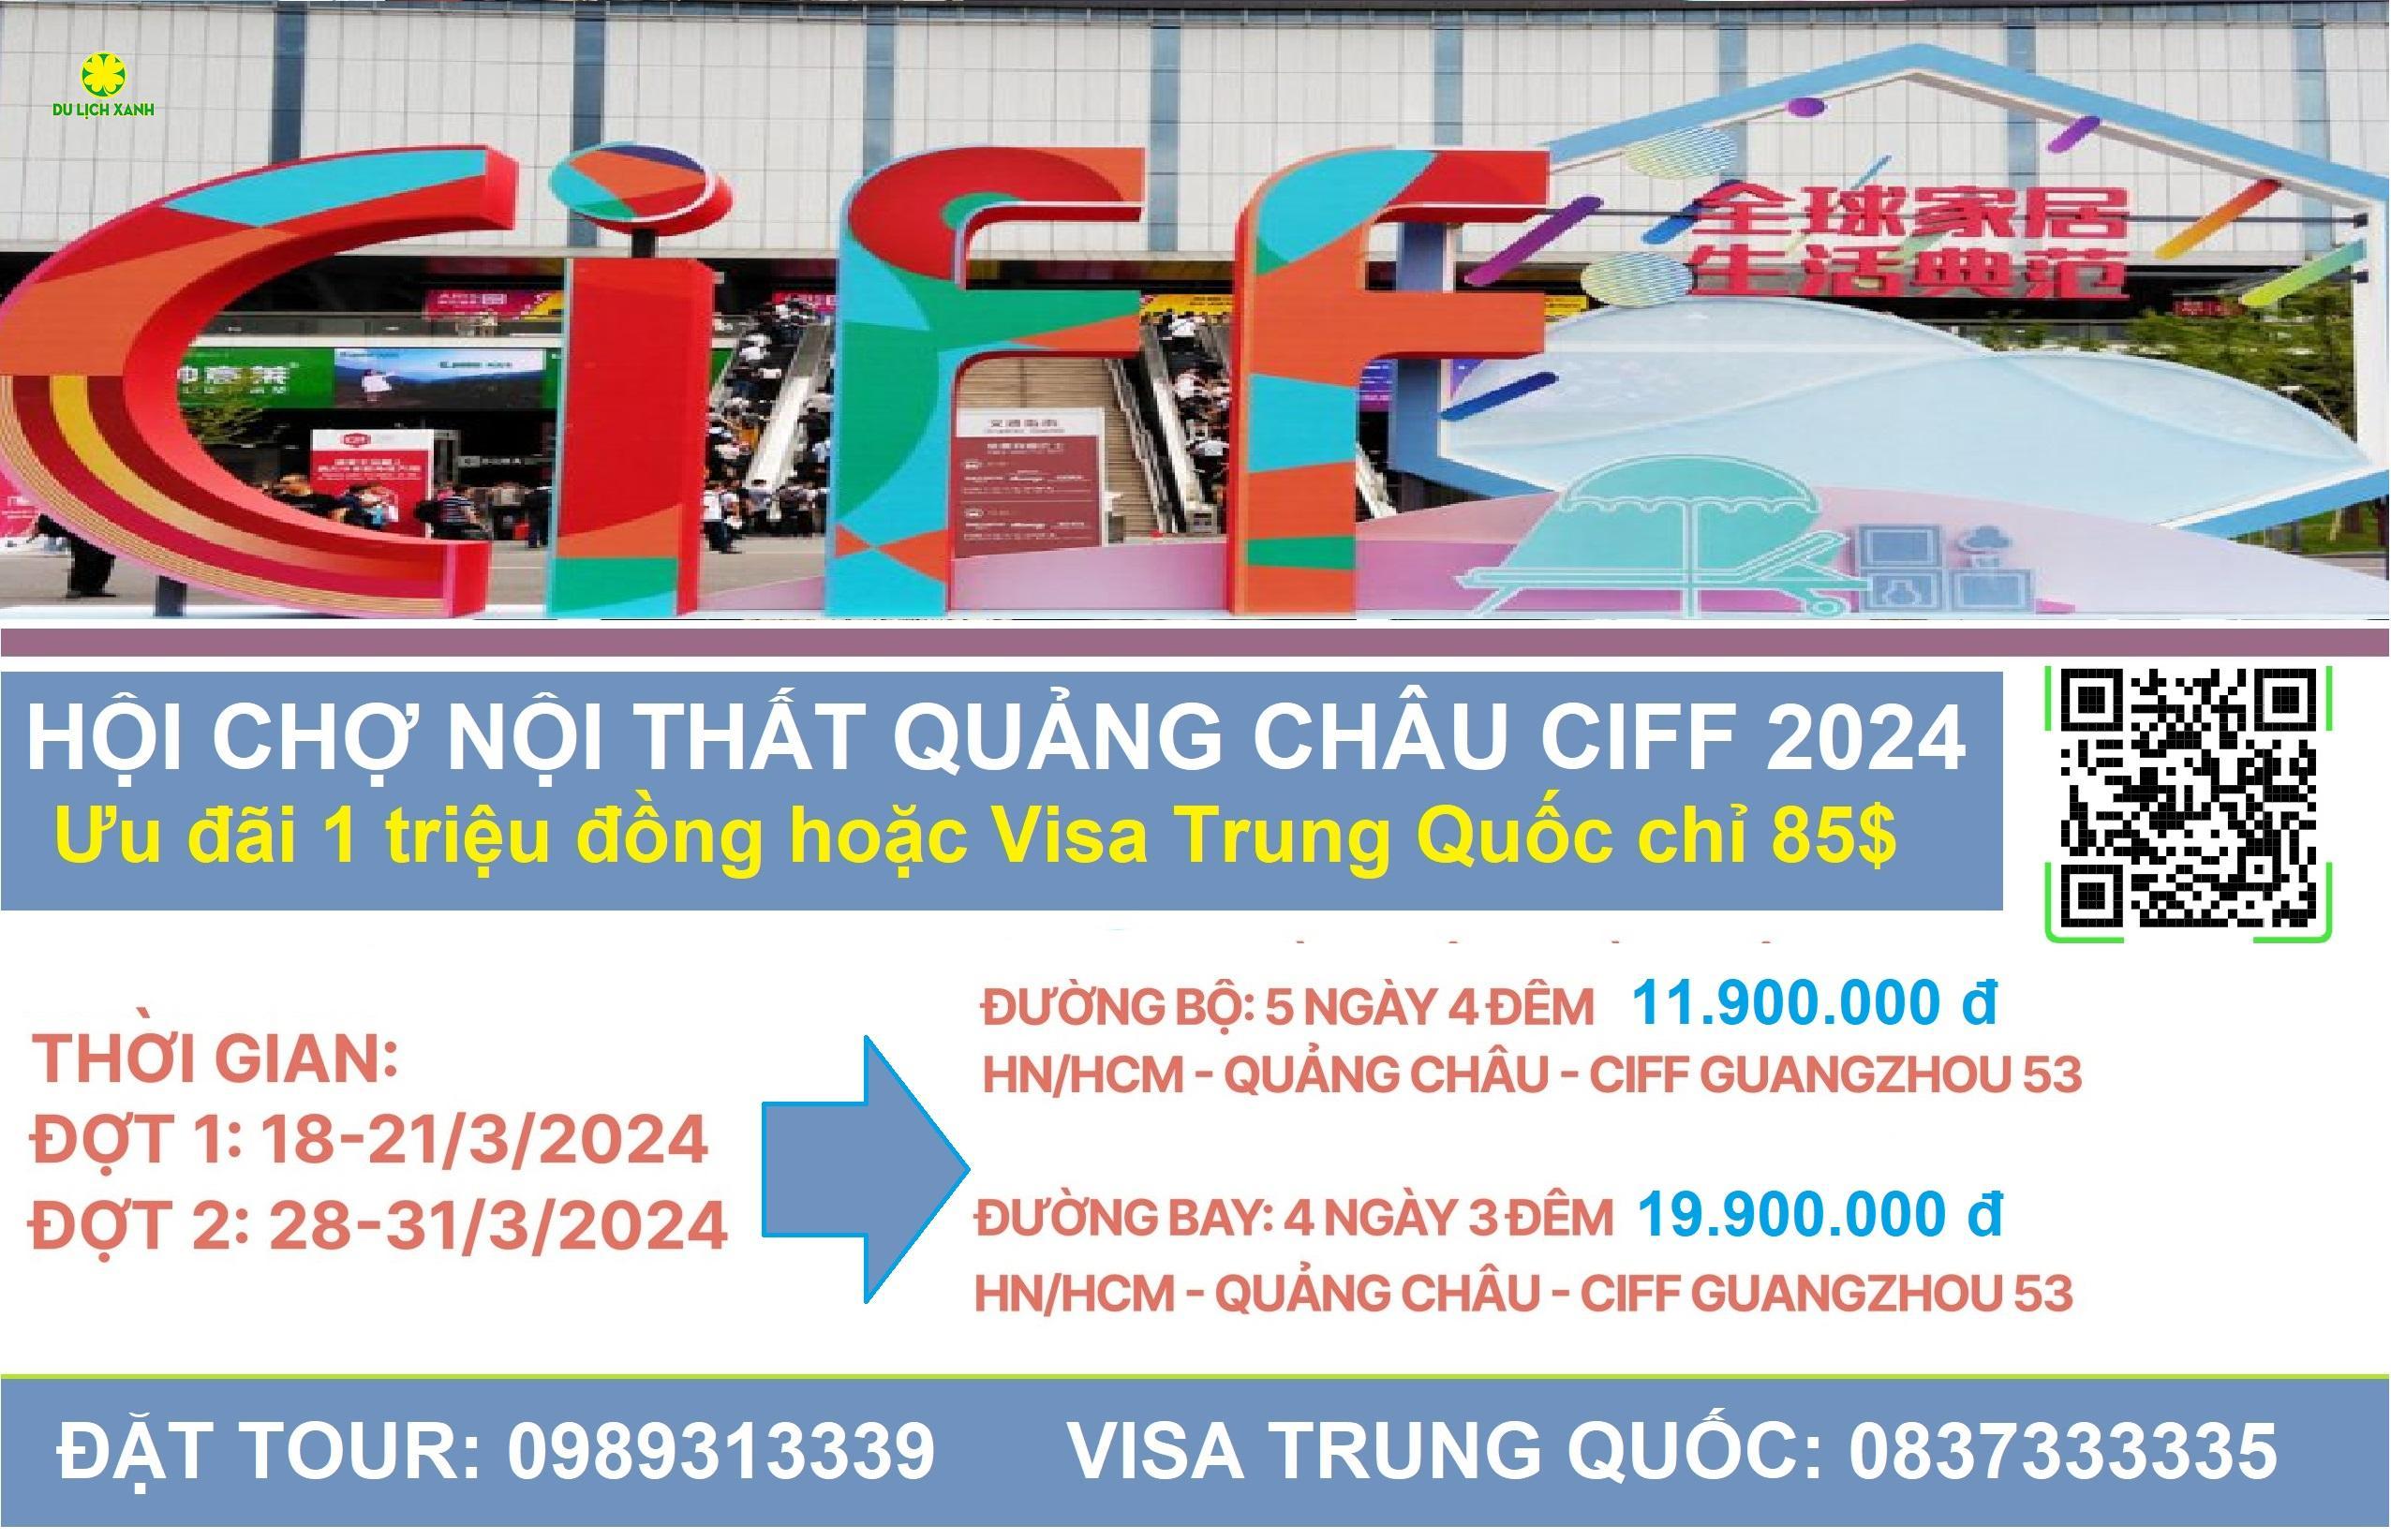 Tour Hội chợ Nội Thất CIFF 2024 lần thứ 53, Tour hội chợ nội thất Quảng Châu CIFF 2024 từ Hồ Chí Minh 4 ngày, Hội Chợ CIFF 2024